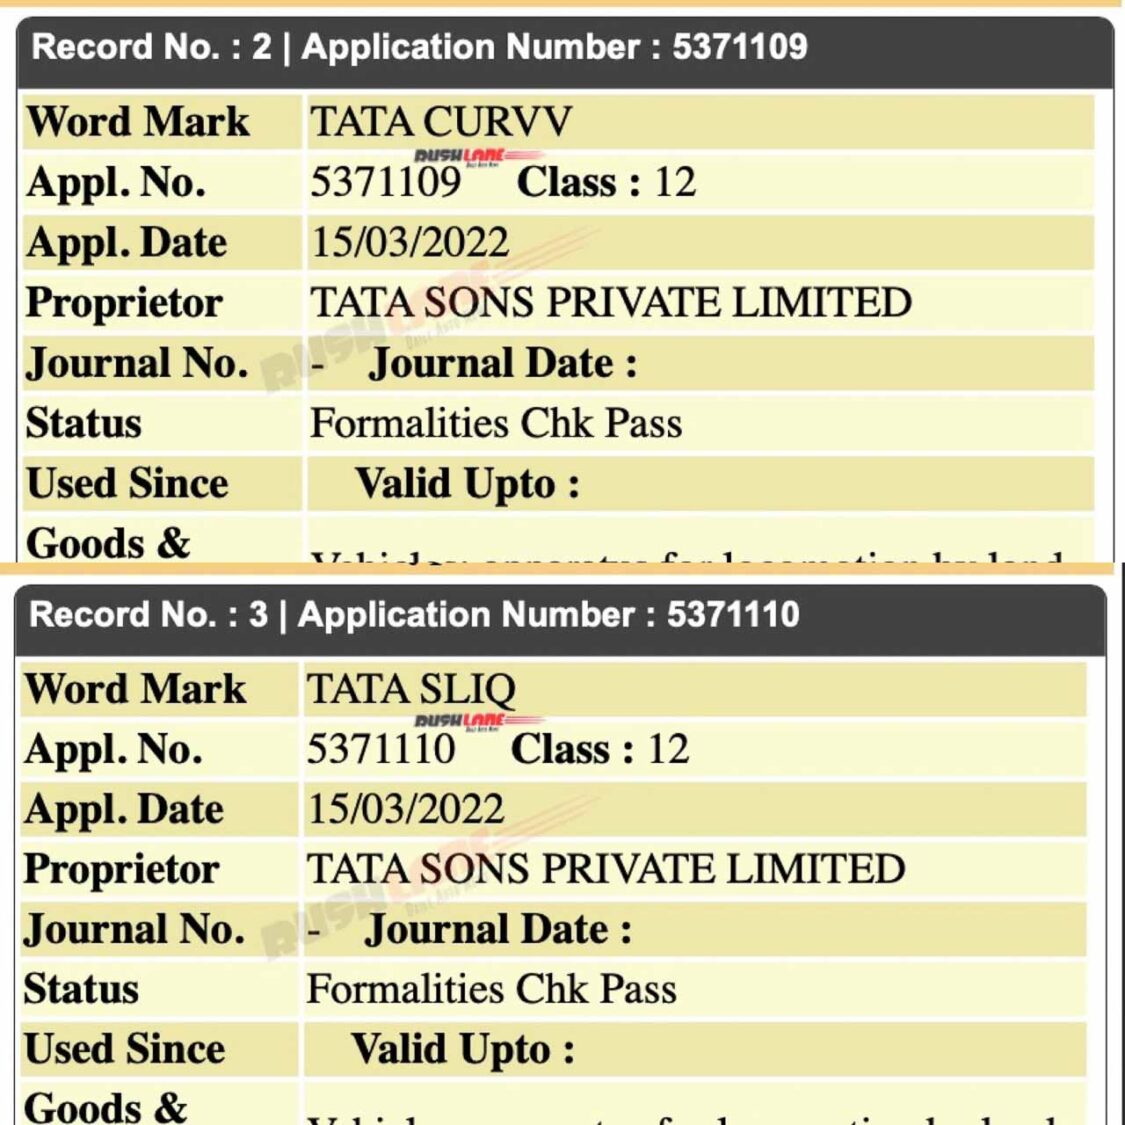 Tata CURVV and SLIQ names registered